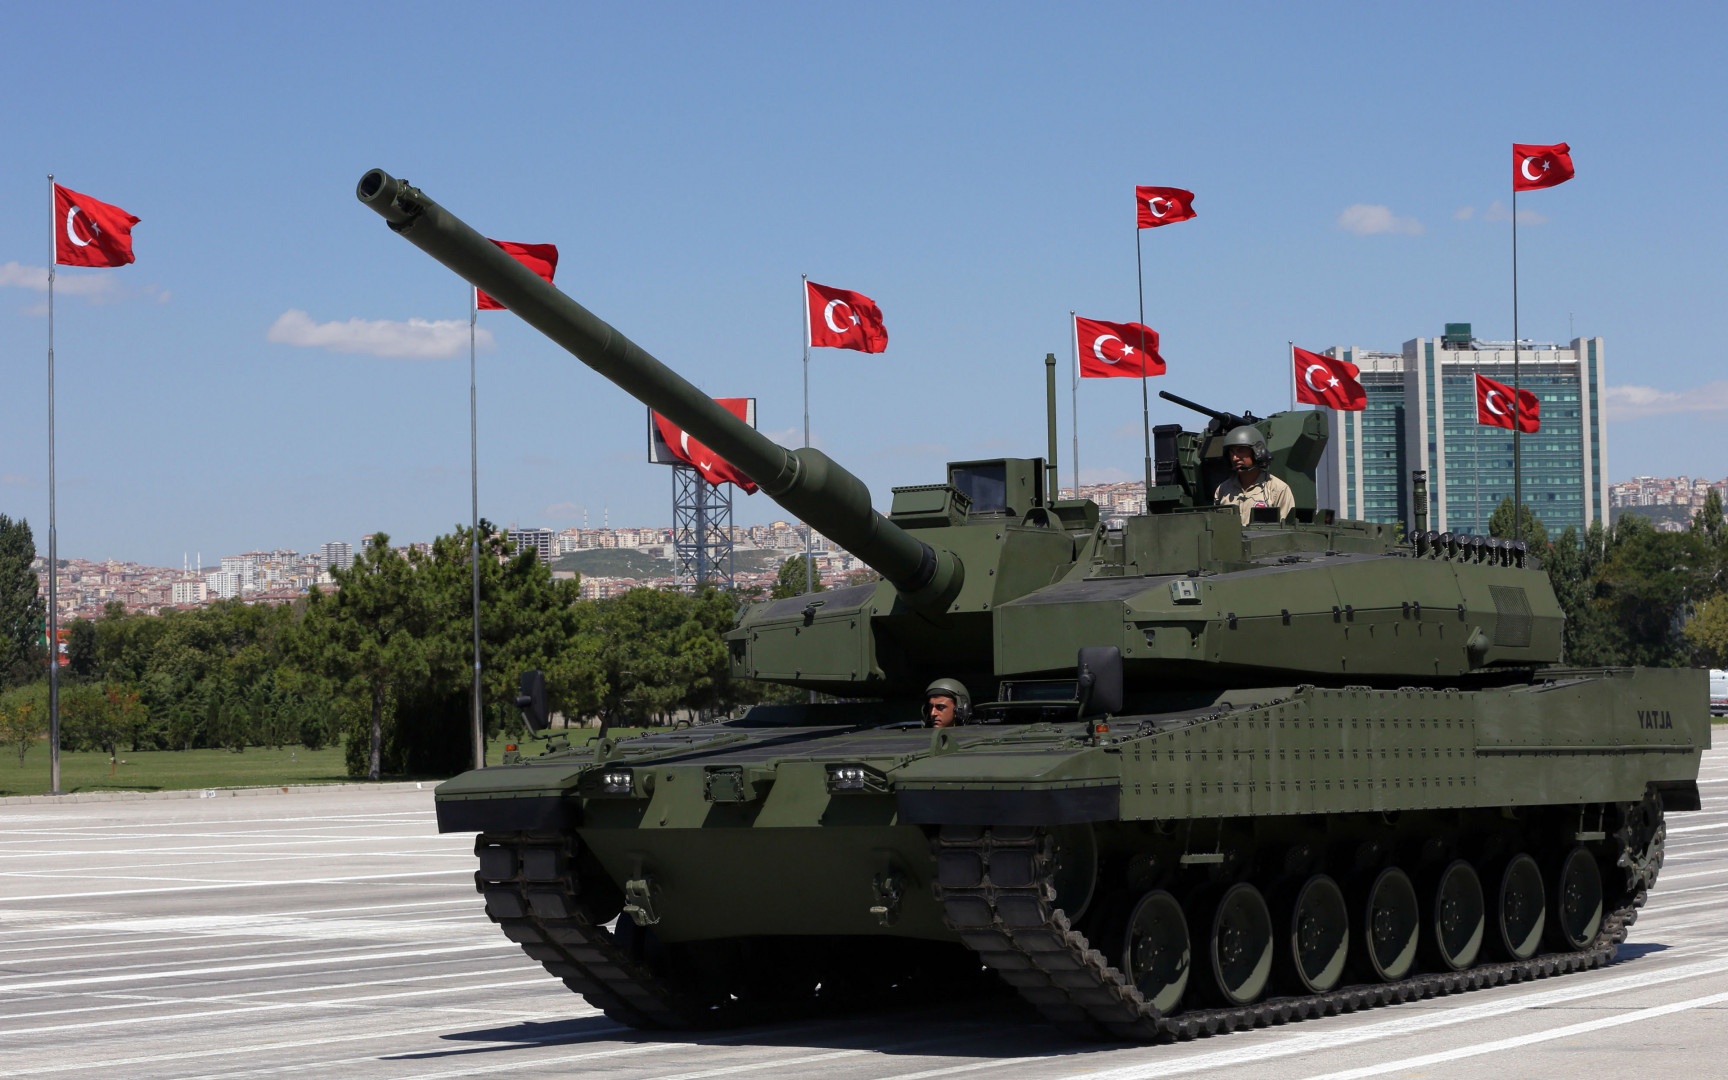 Türk askeri sanayileri, ABD müttefikinin birçok silah projesini engelleyen eşi görülmemiş yaptırımlarına maruz bırakılarak Washington'dan acı bir darbe alırken, "bulmaca" olarak nitelendirilebilecek bir başka kriz de Katar'ın yatırım yaptığı ve Türkiye'nin orijinal parçaları olarak tanıttığı bir silahı tehdit ediyor. Ankara'nın yerli sanayinin gururu olarak gördüğü "Altay" tankı, en önemli bileşeni olan motorunun gün yüzüne çıkmasını bekliyor.